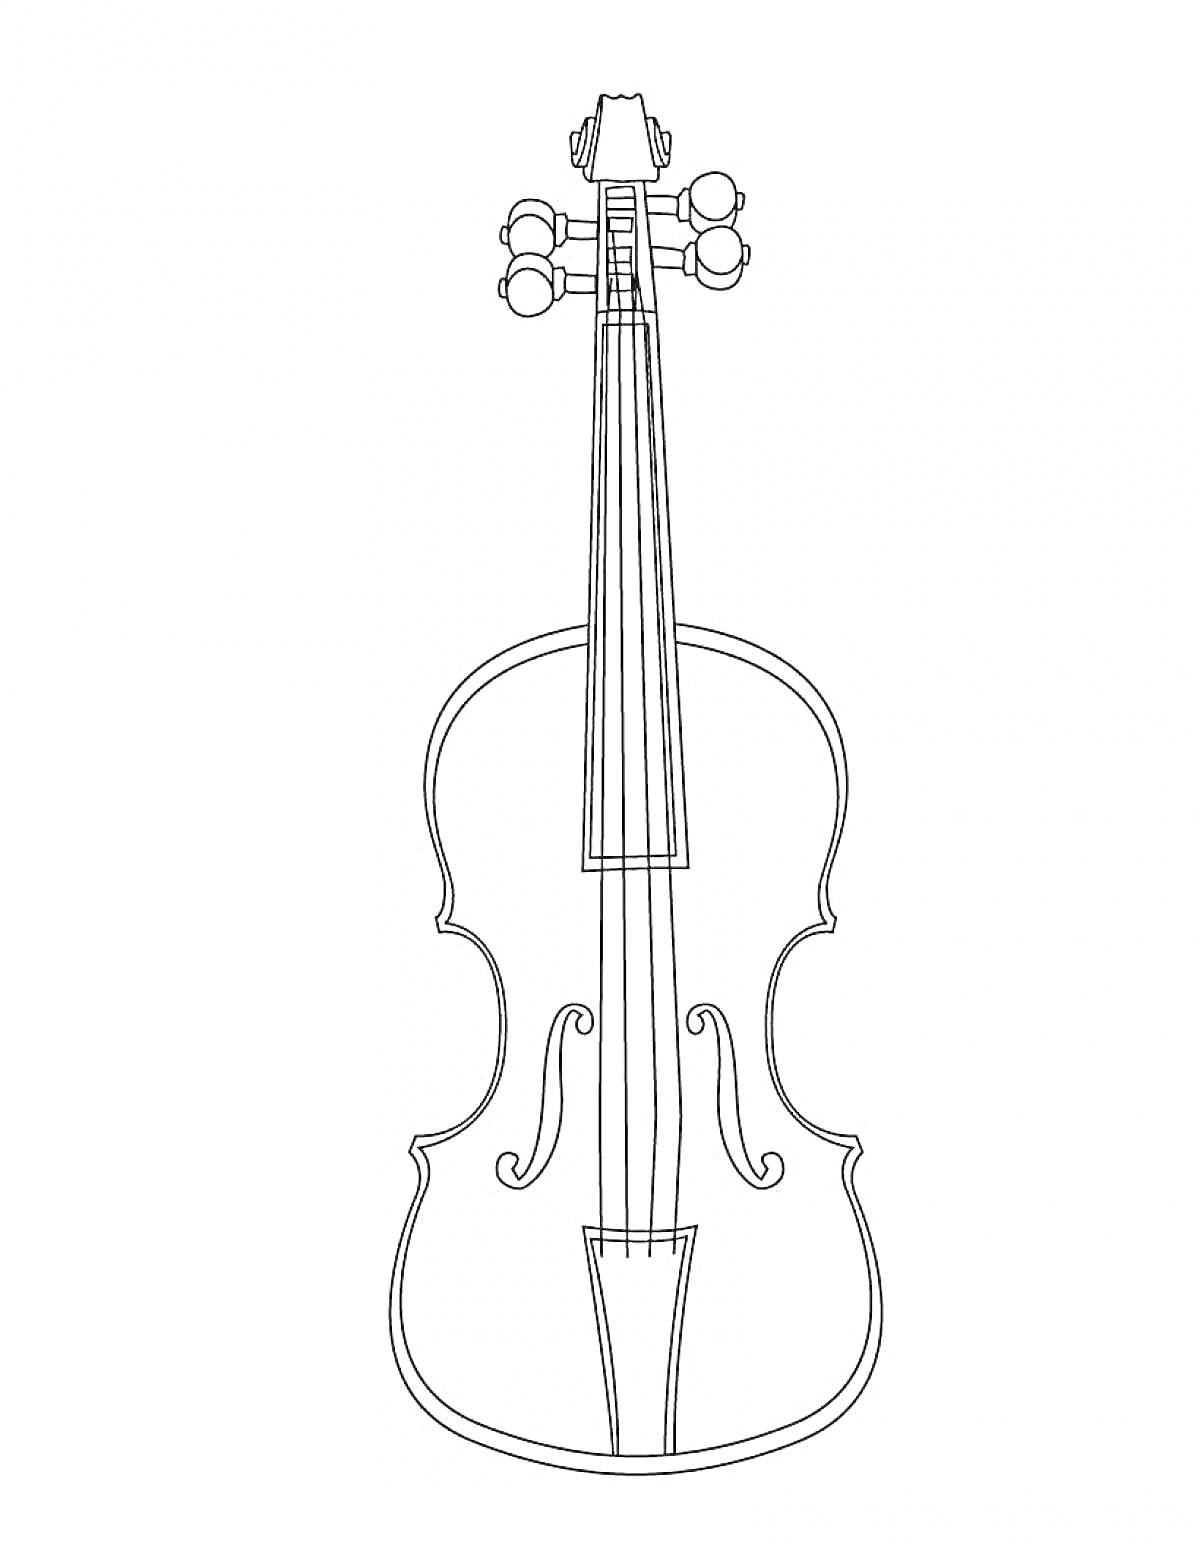 Раскраска скрипка с грифом, колками и струнами